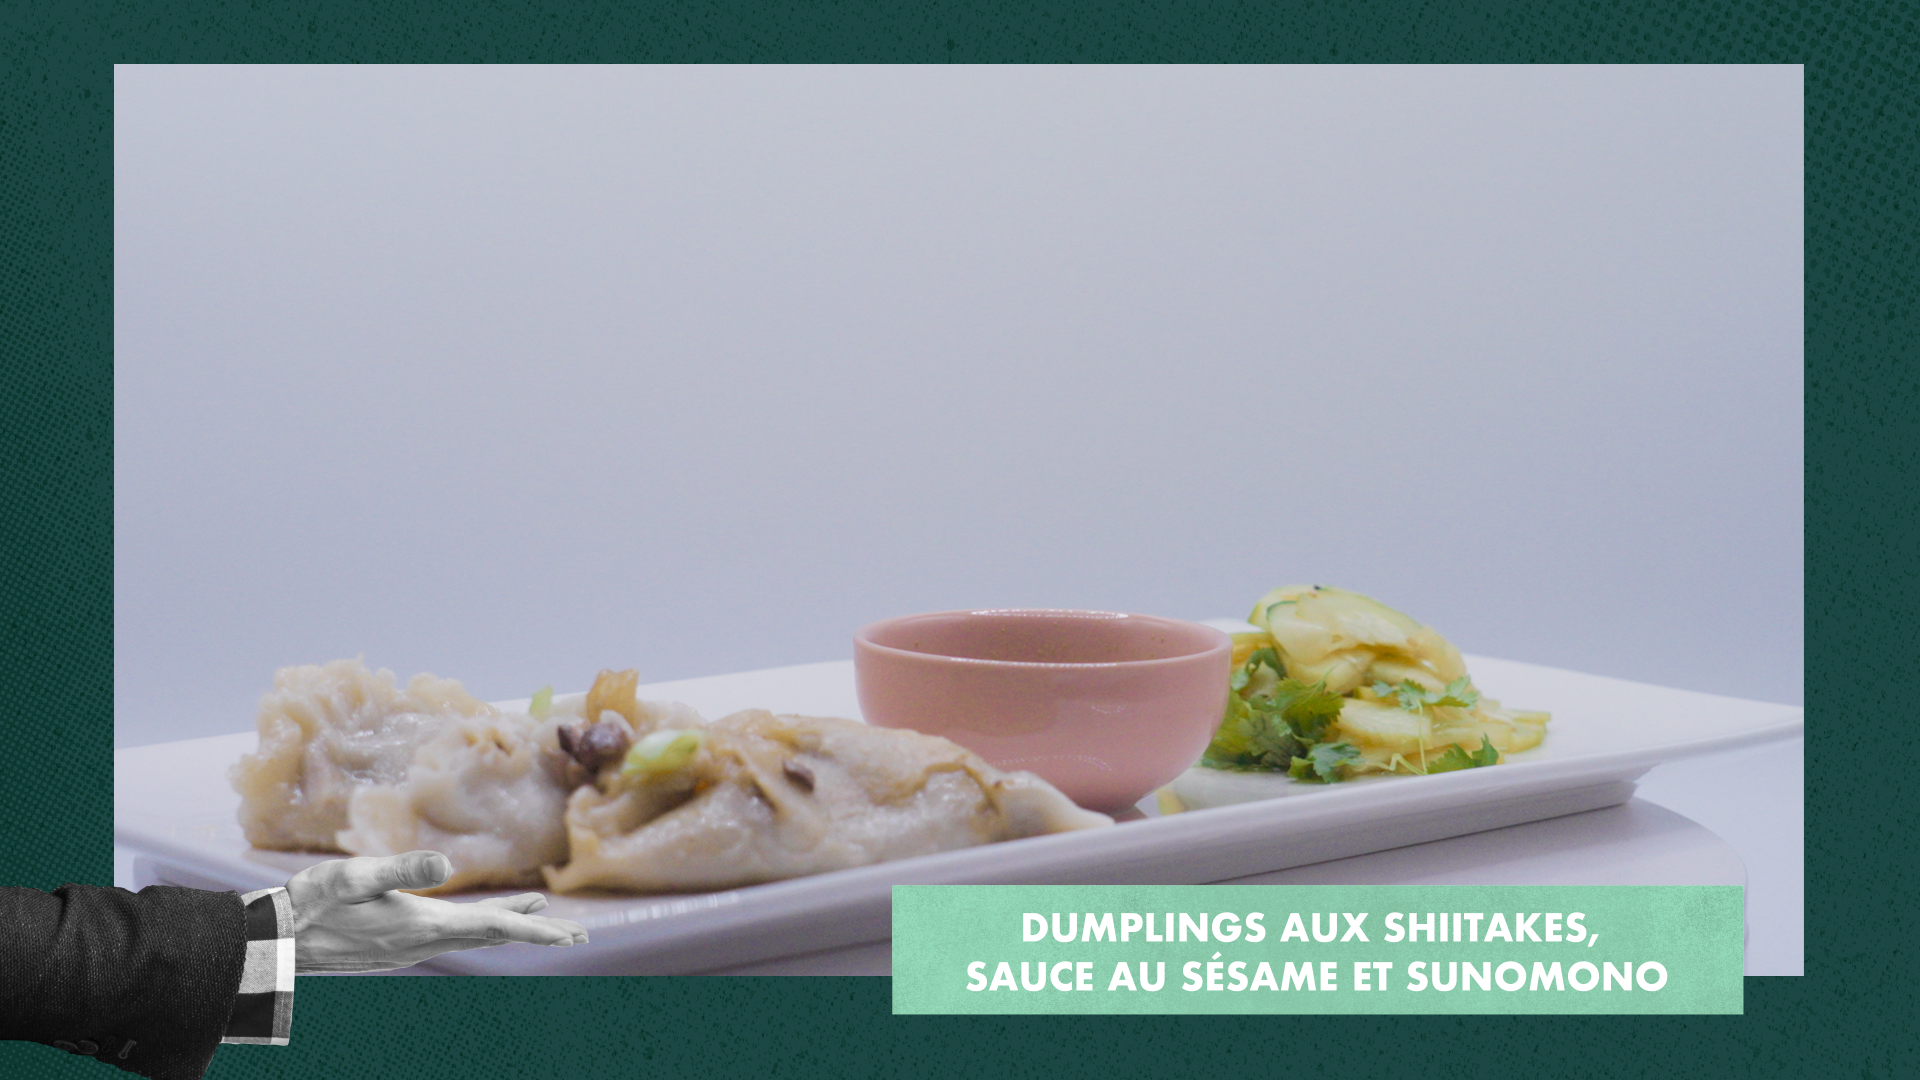 Dumplings aux shiitakes, sauce au sésame et sunomono